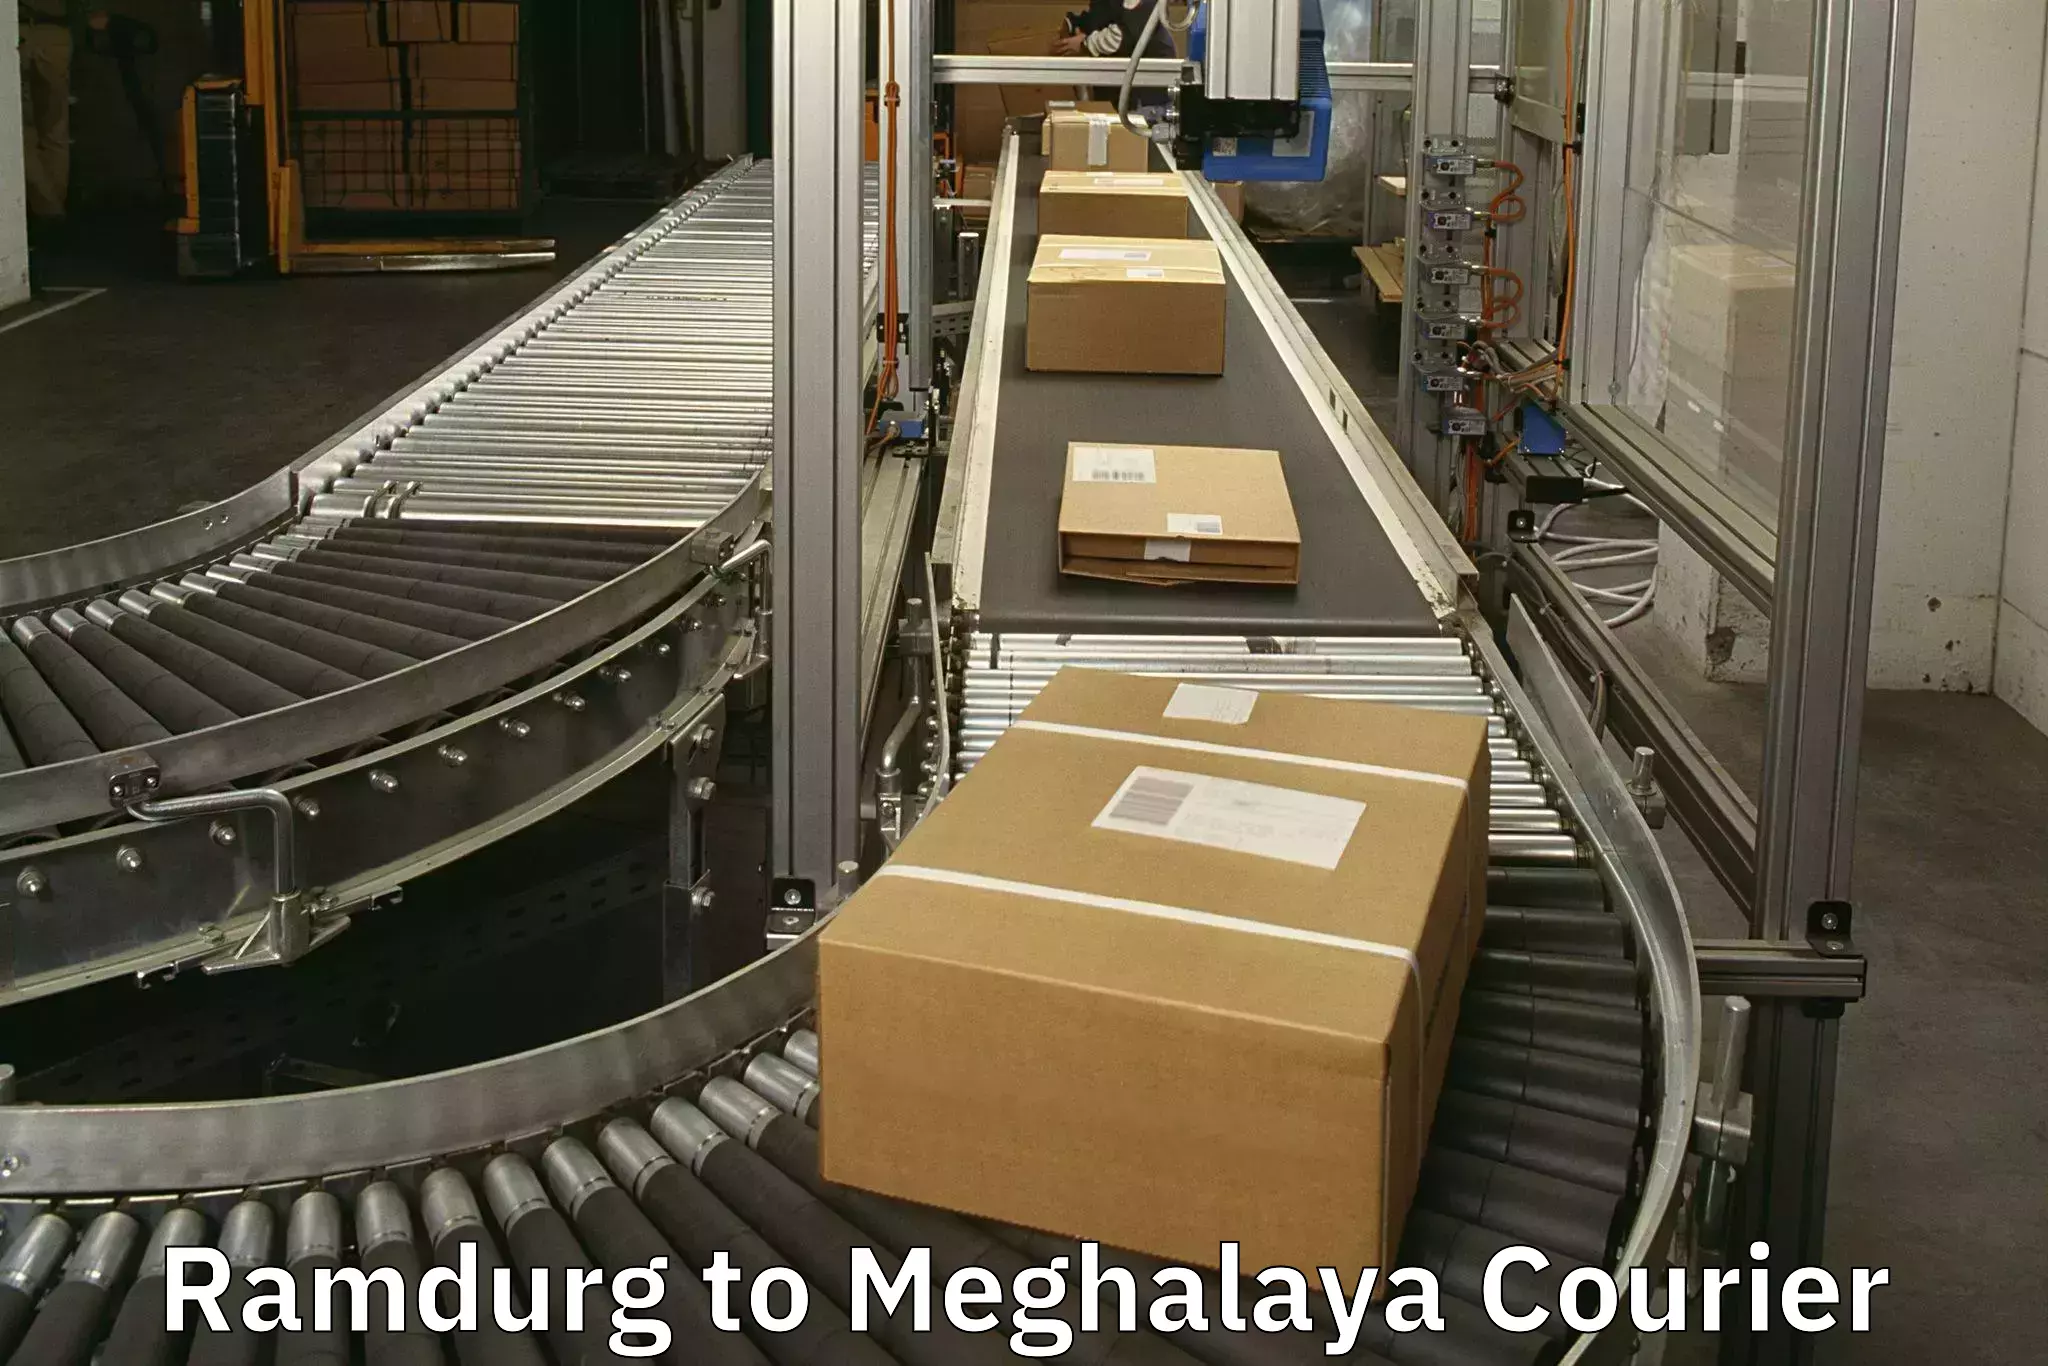 Baggage shipping experts Ramdurg to Meghalaya